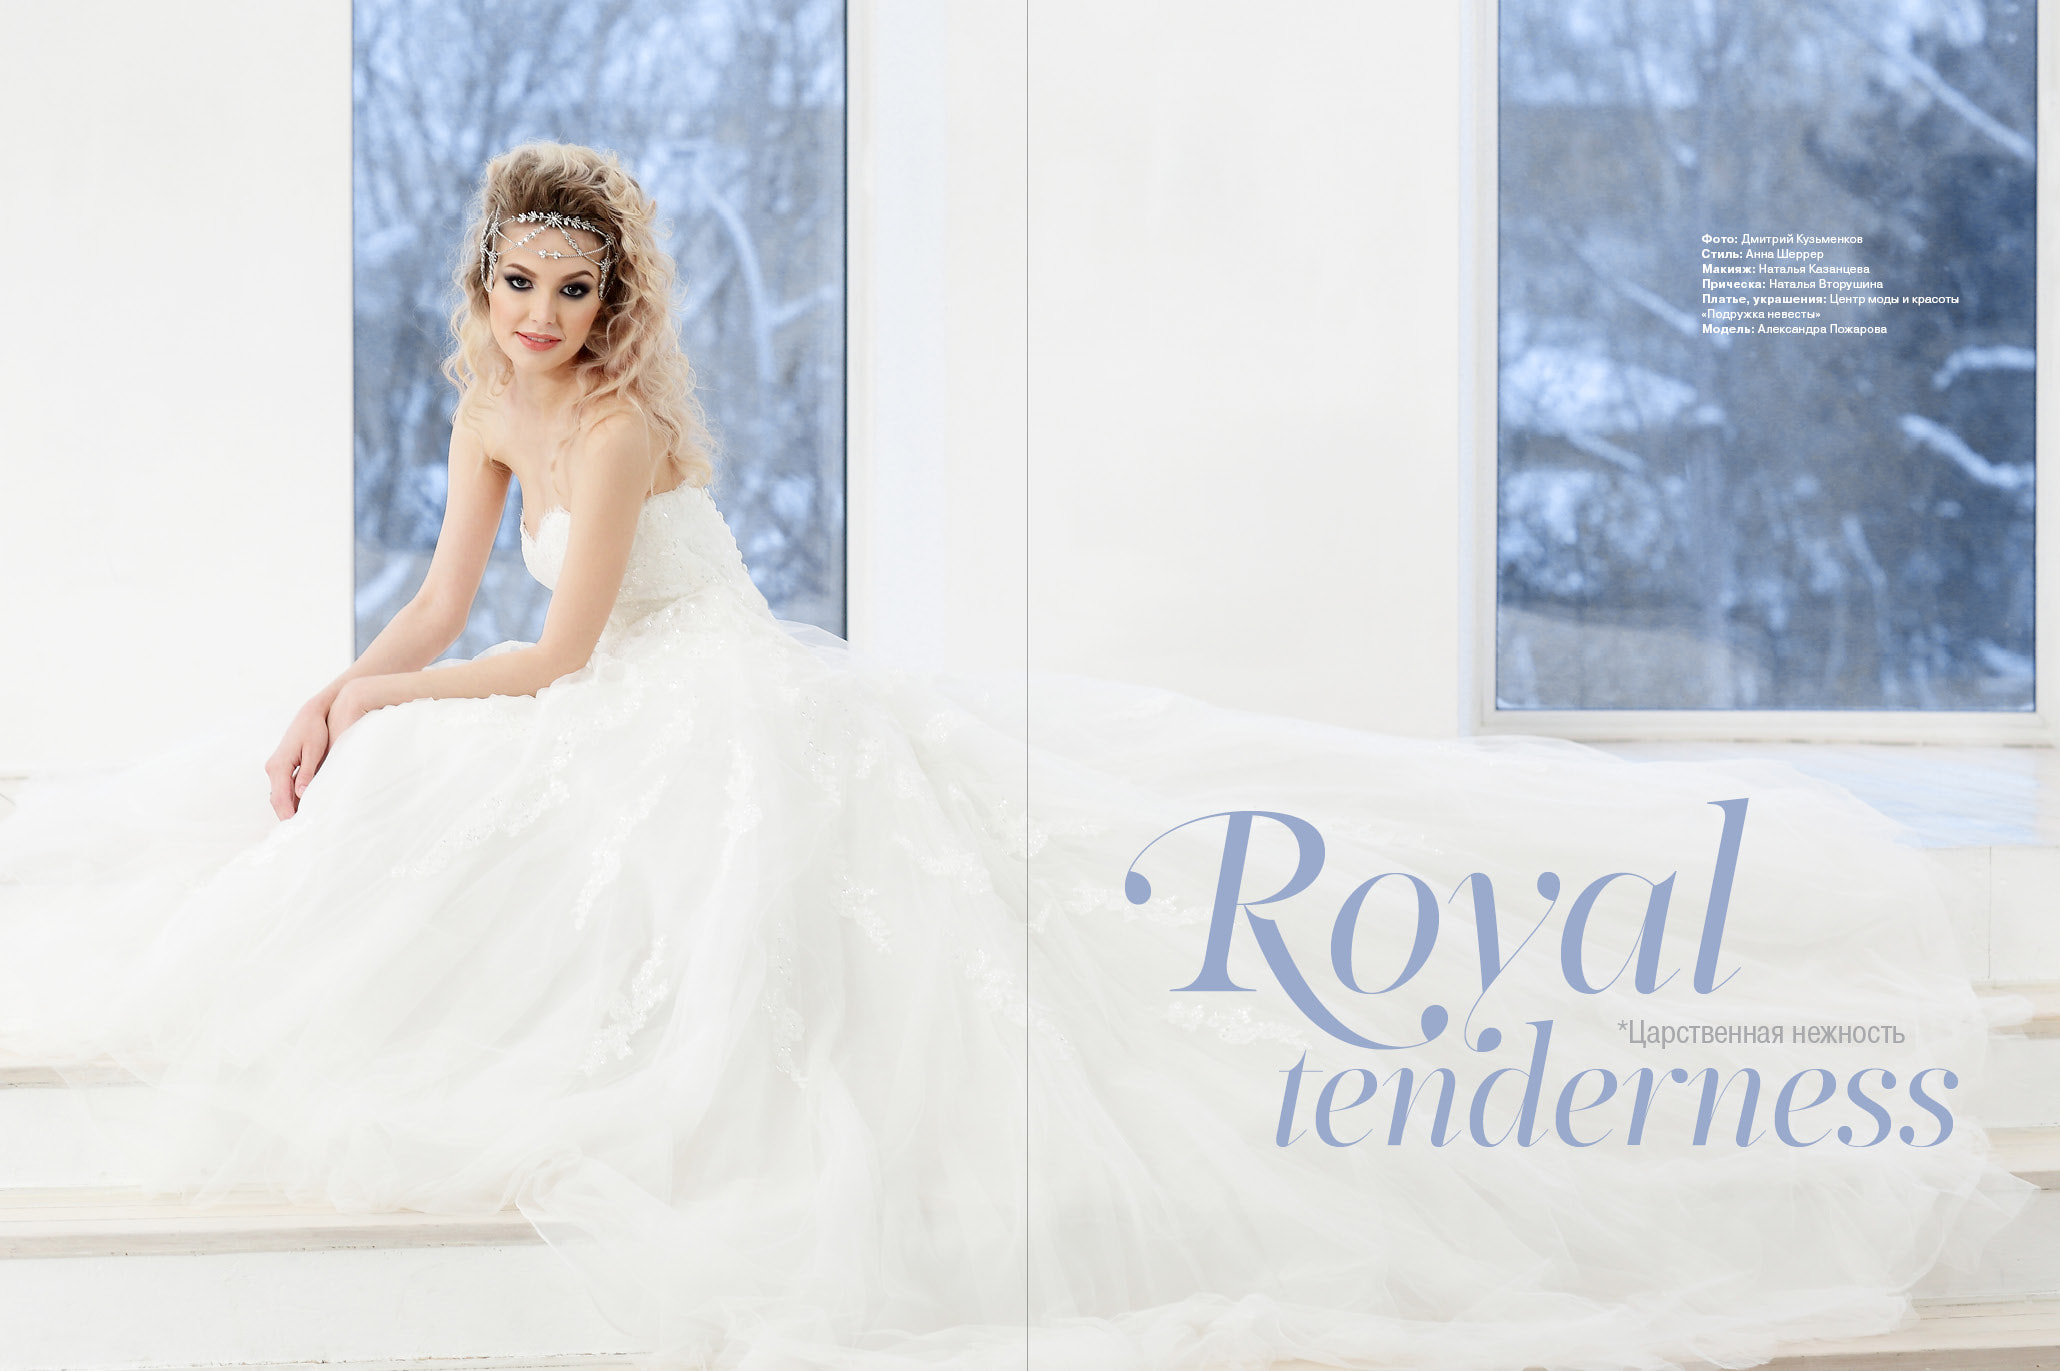 Обложка журнала Свадьба Royal tenderness (Царственная нежность)